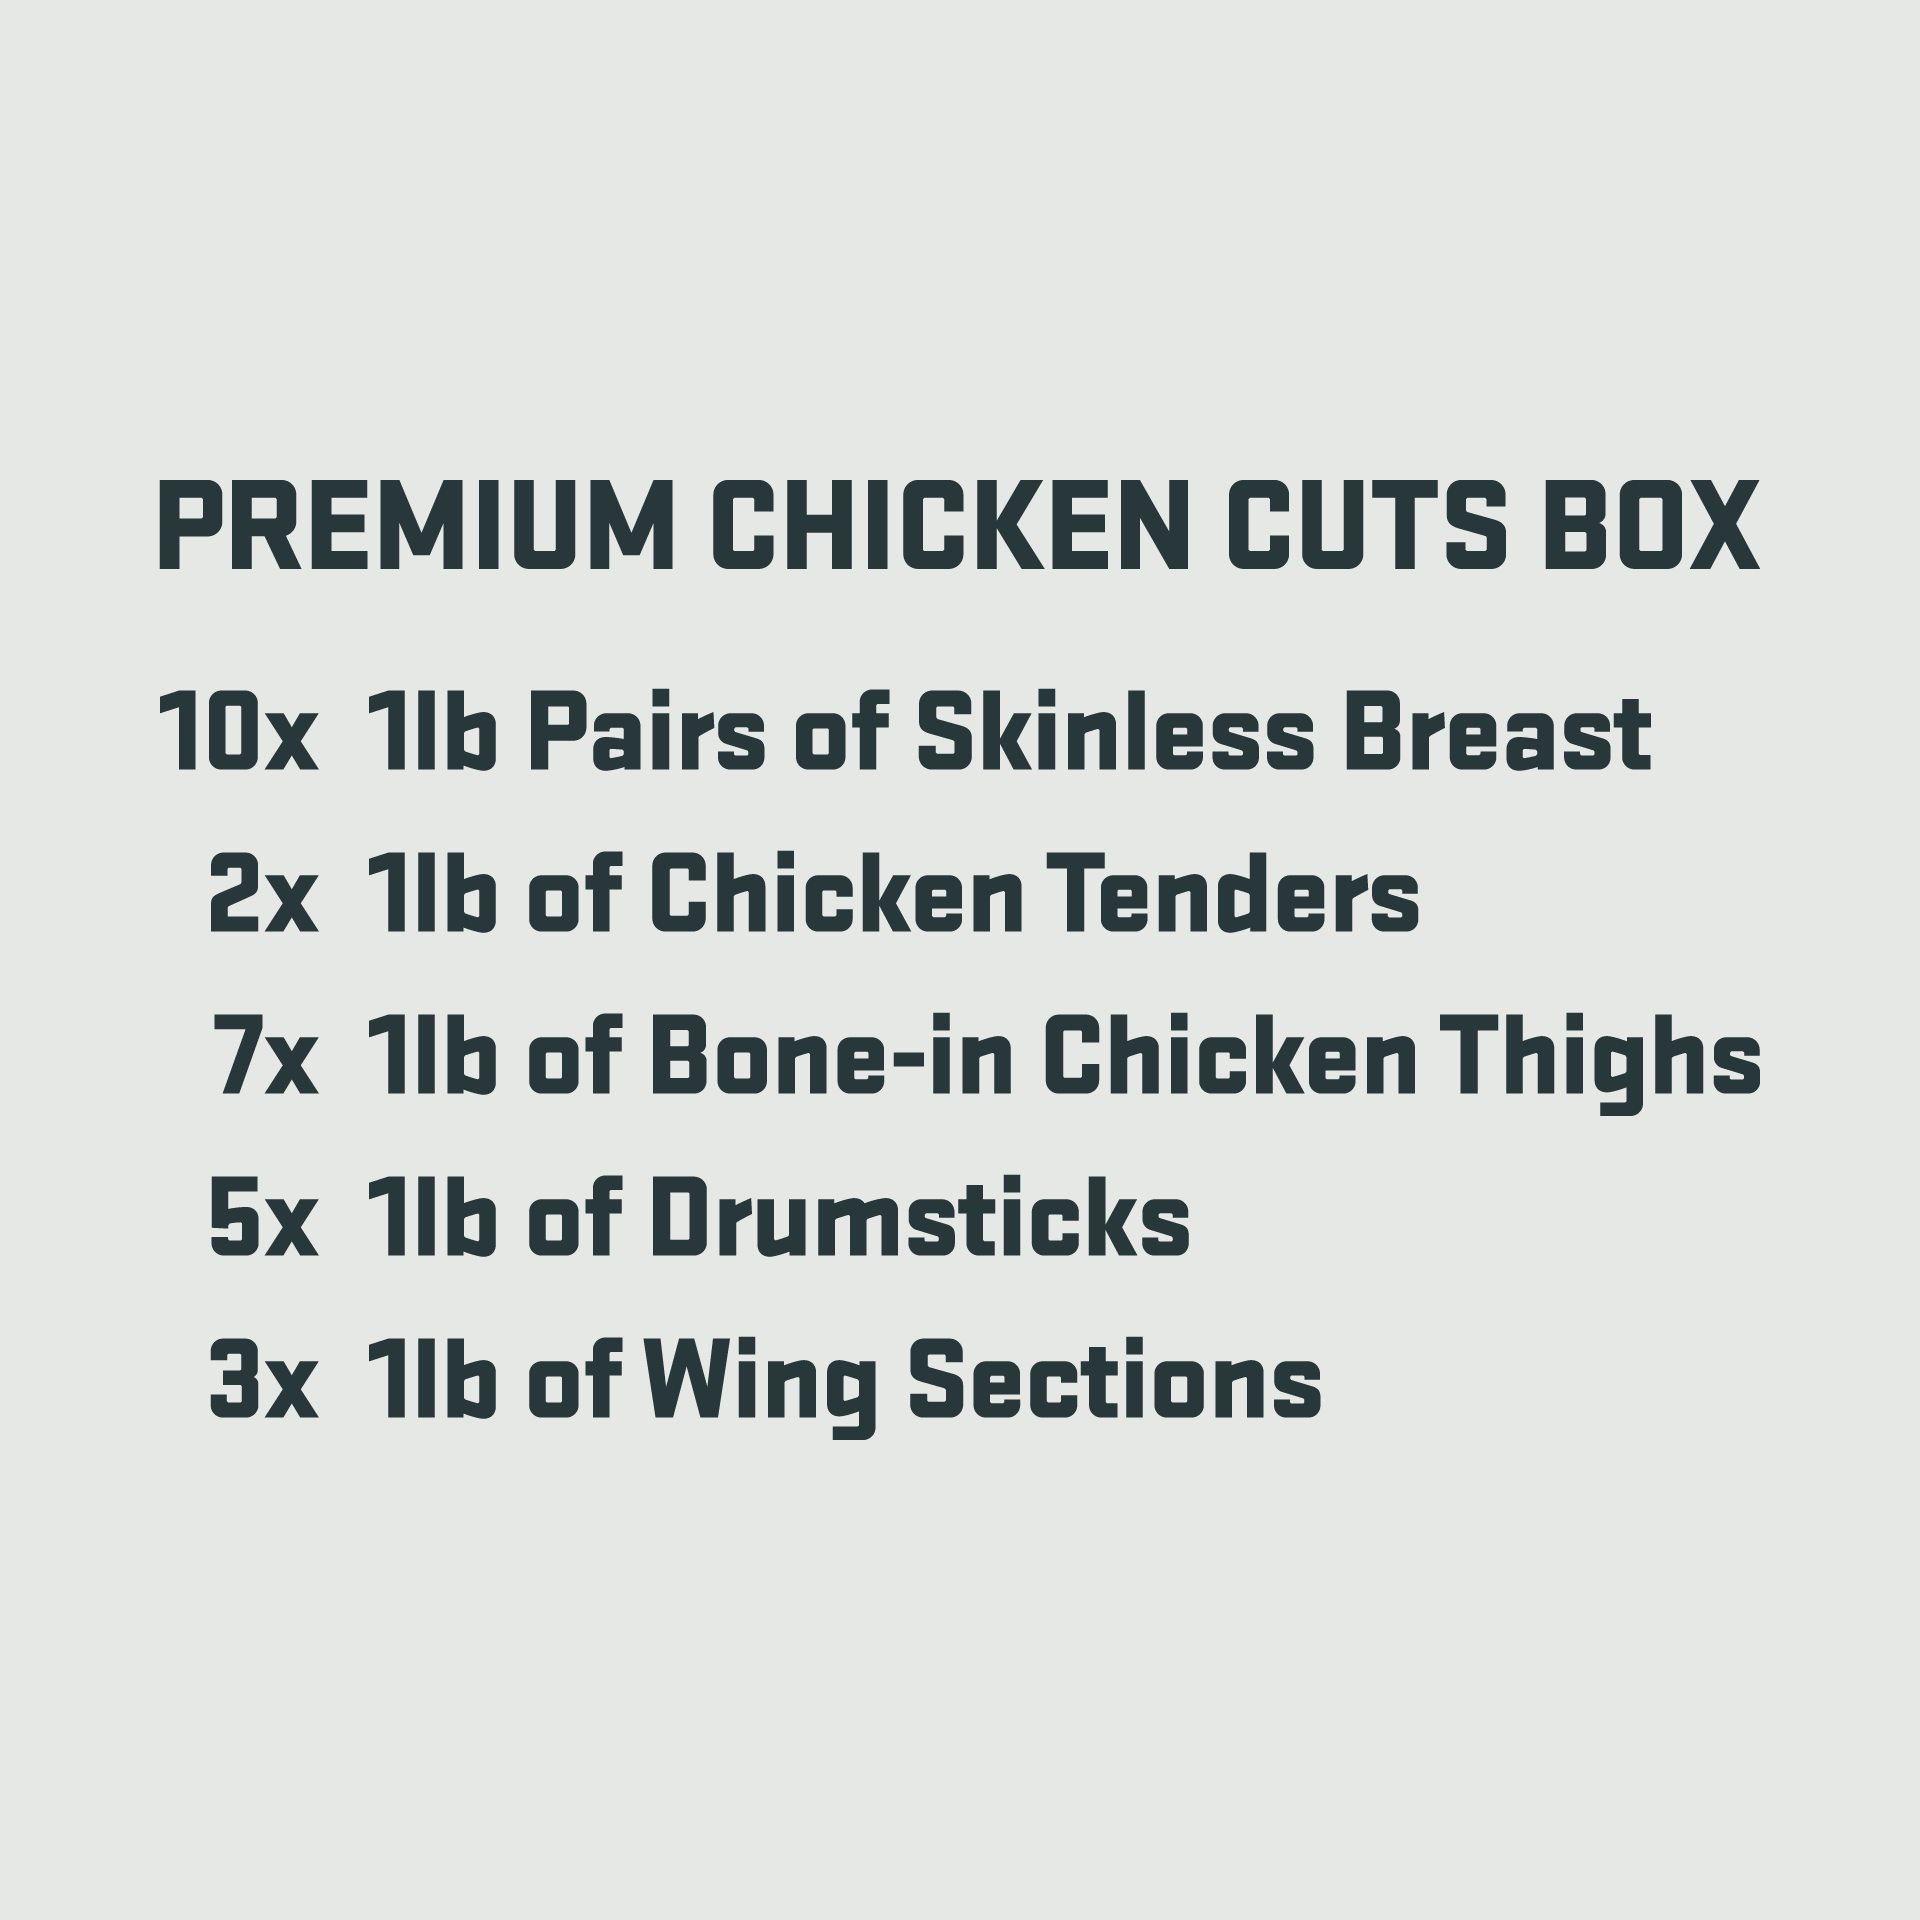 Premium Chicken Cuts Box